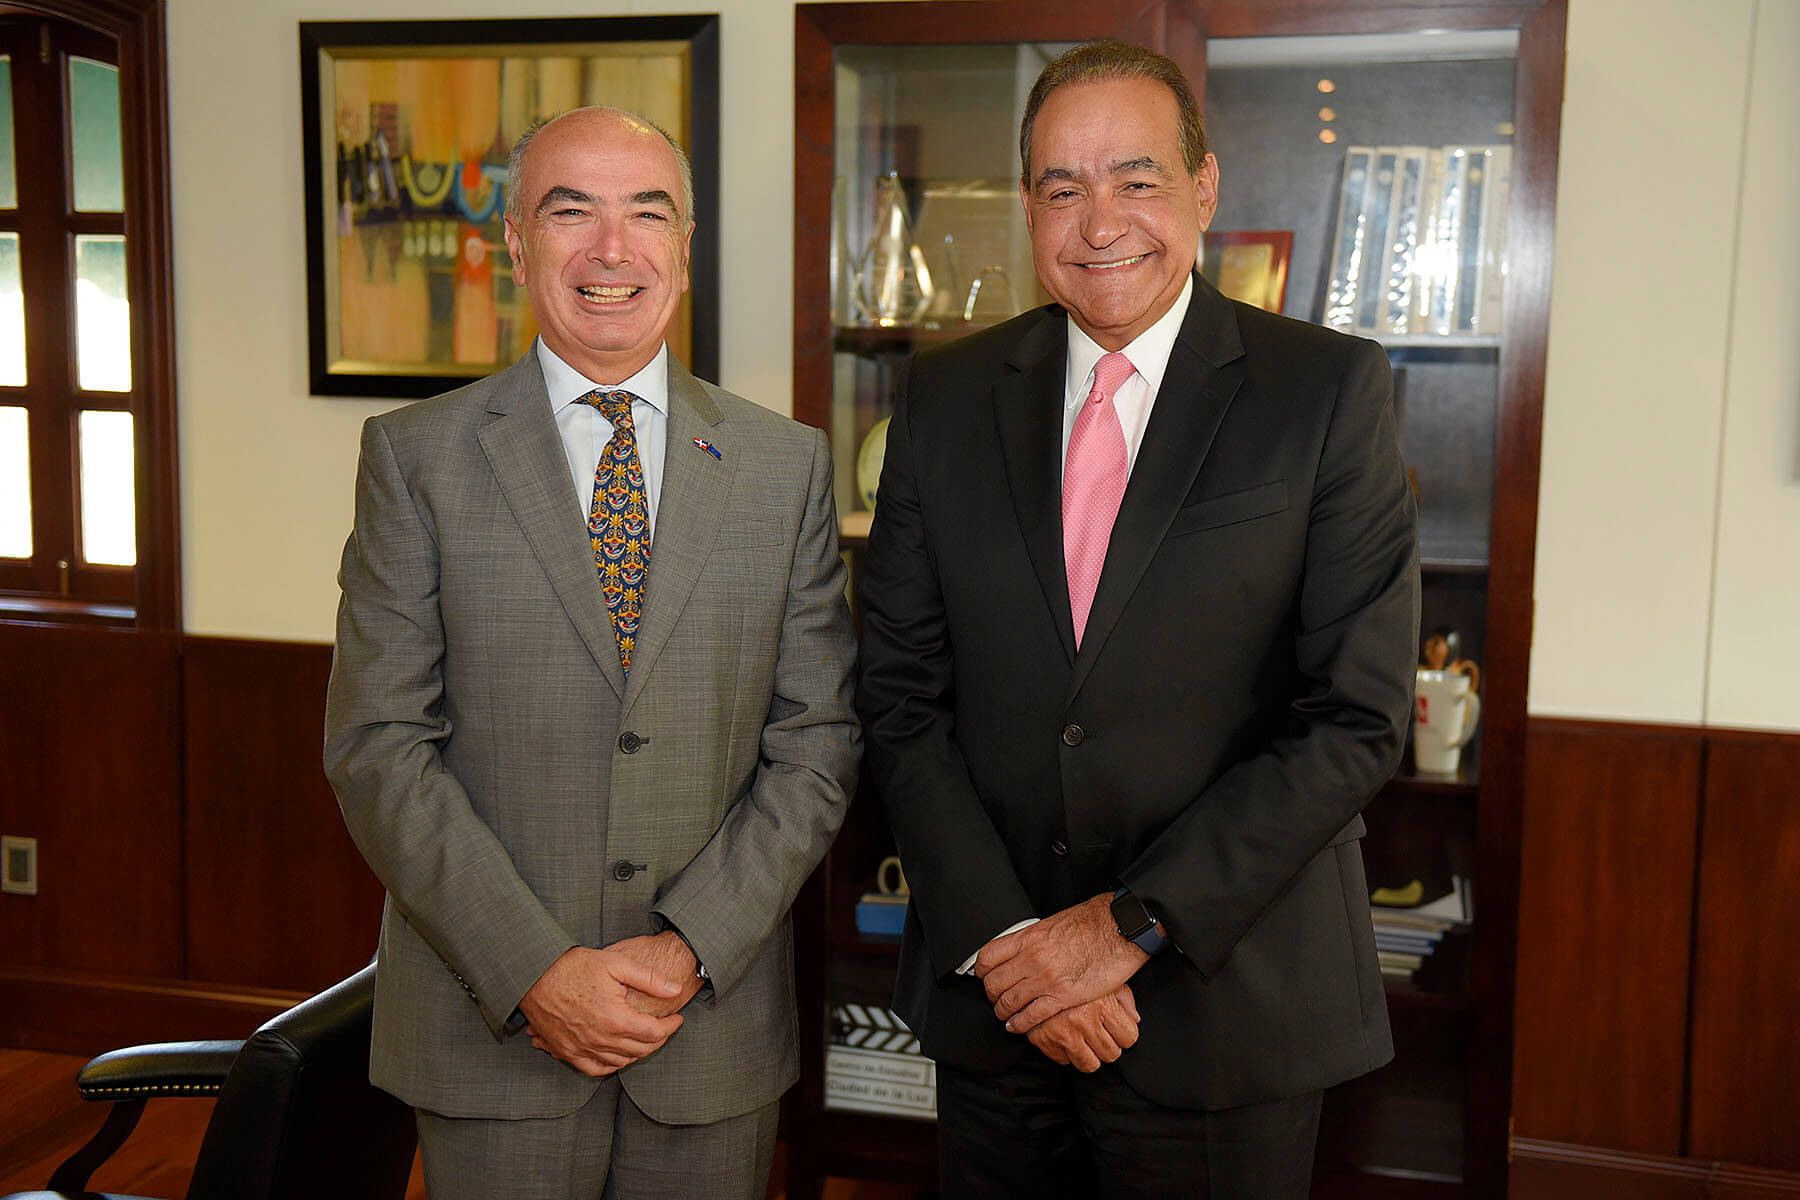 Foto principal - El embajador Gianlucca Grippa y el Dr. Julio Amado Castaños Guzmán